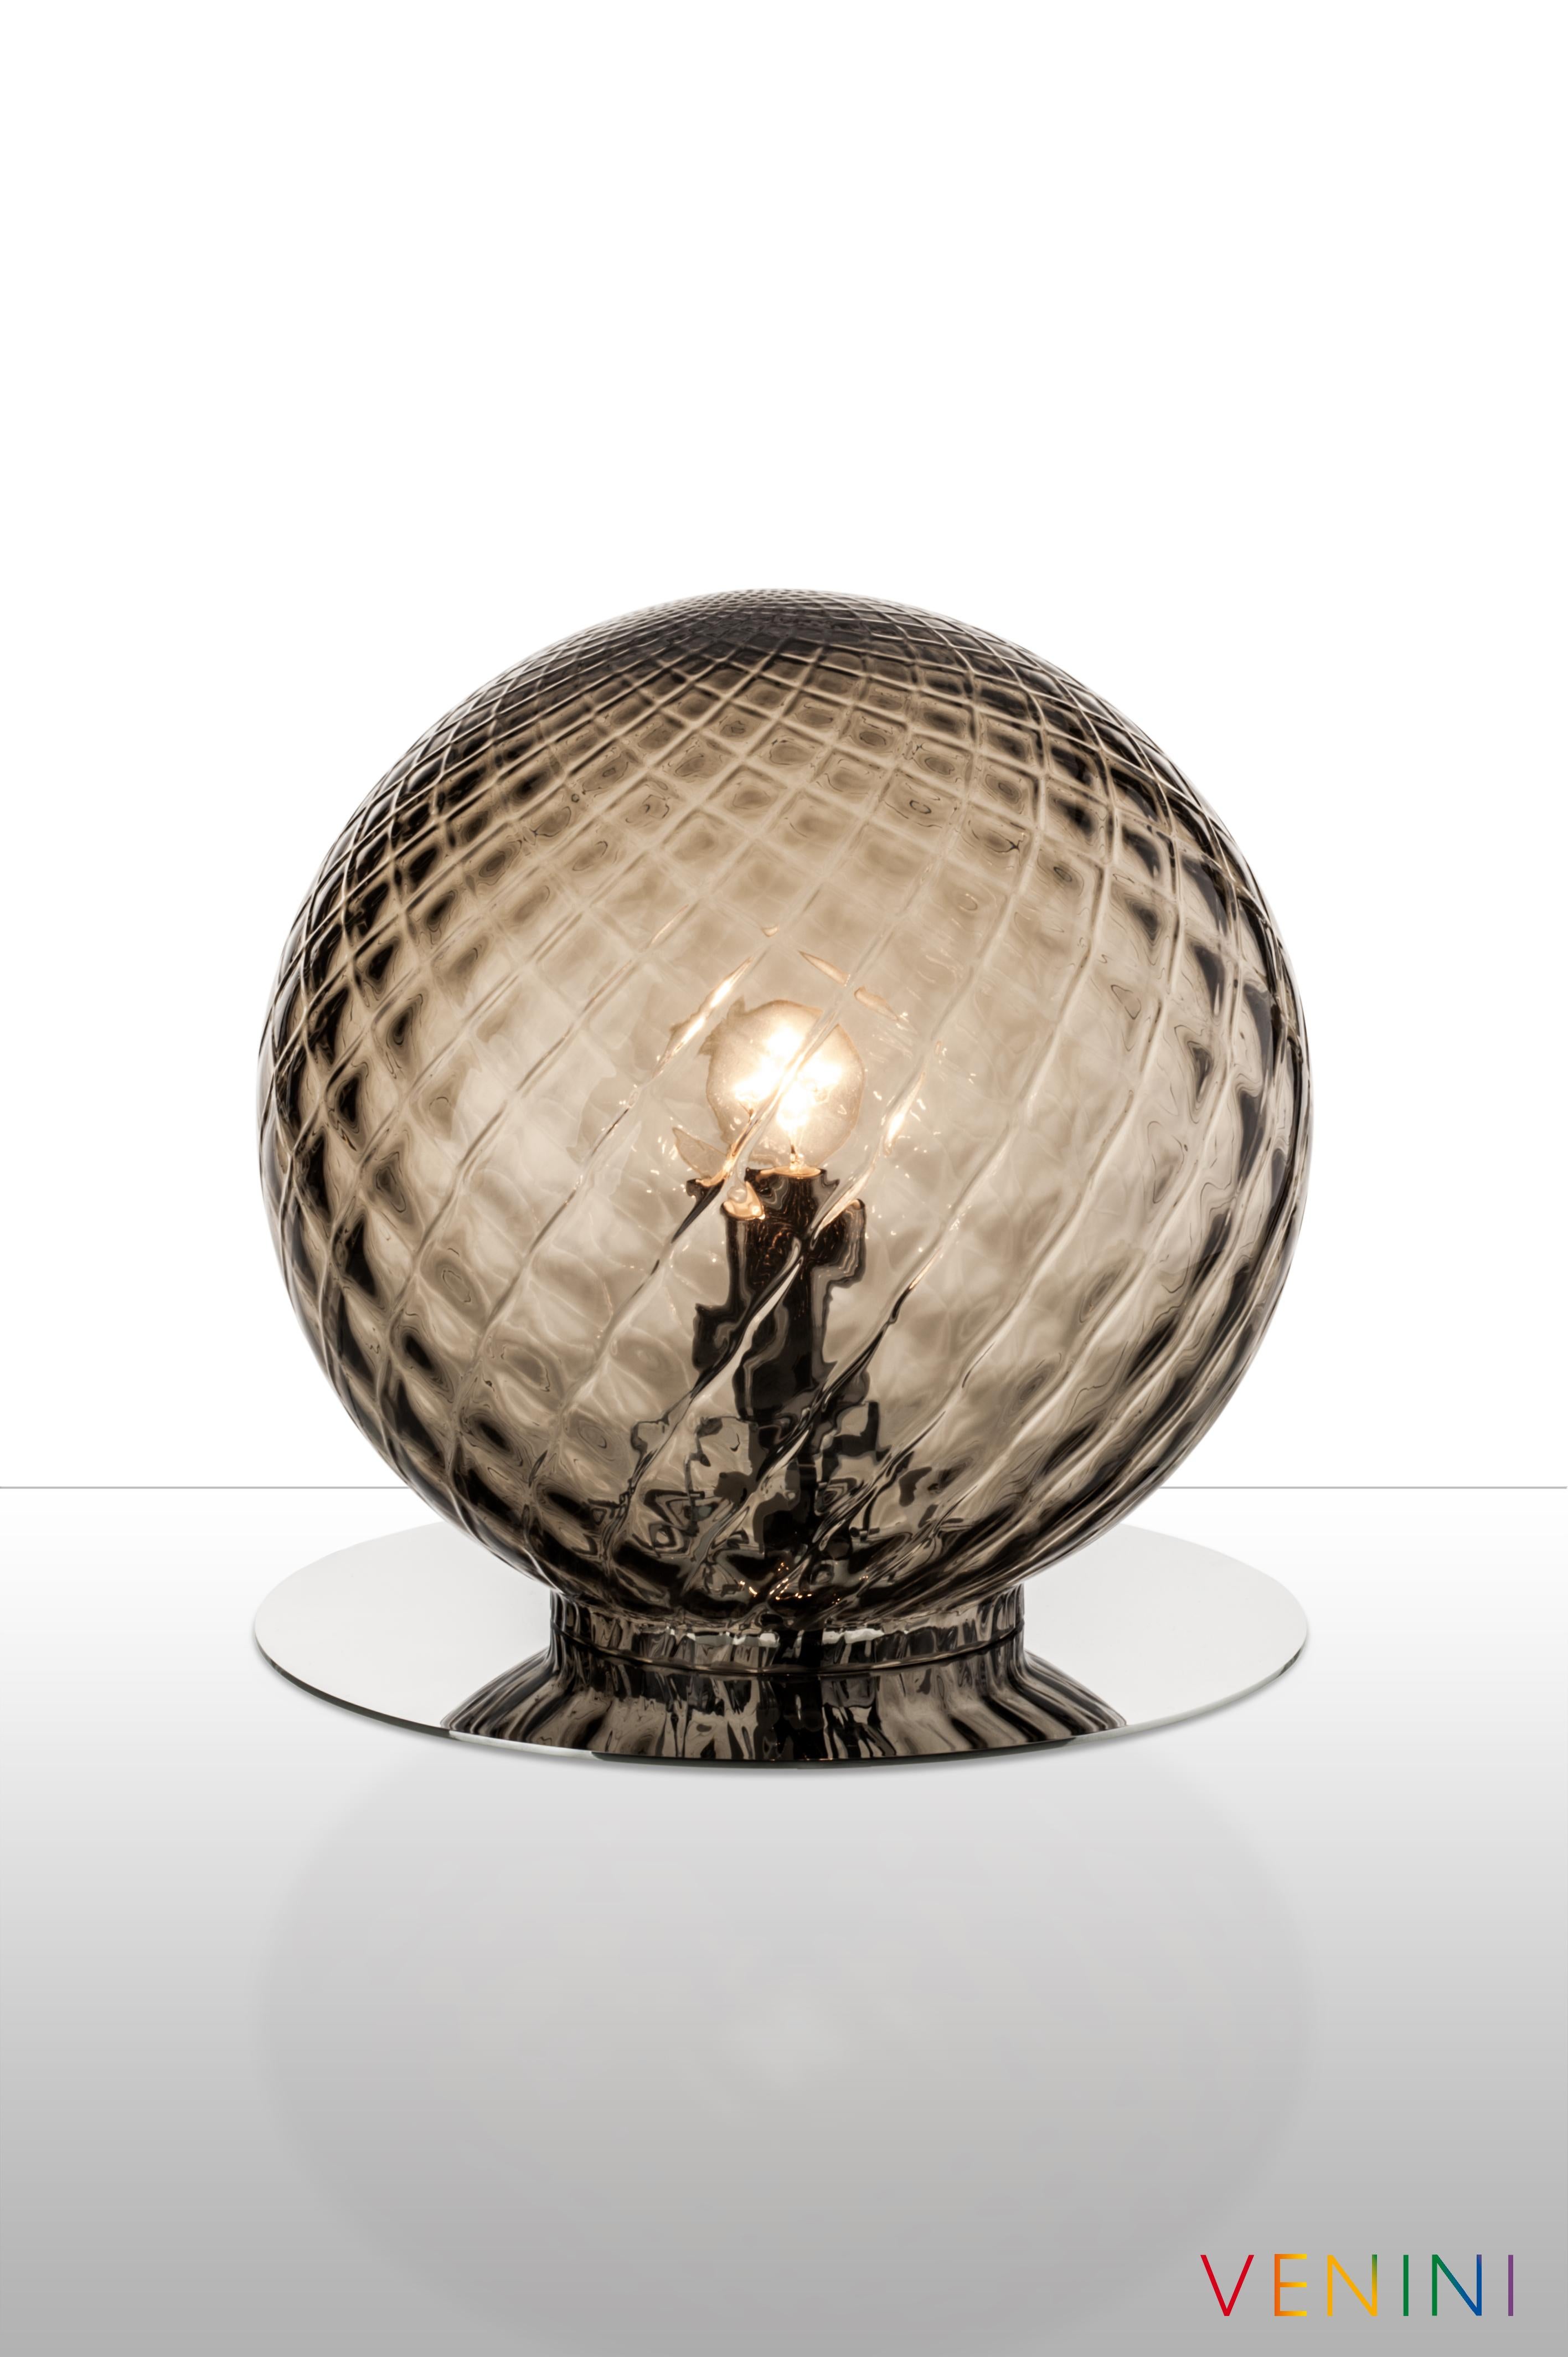 La lampe de table Balloton, conçue et fabriquée par Venini, est disponible en trois couleurs différentes. Utilisation intérieure uniquement.

Dimensions : Ø 25 cm, H 26 cm : Ø 25 cm, H 26 cm.